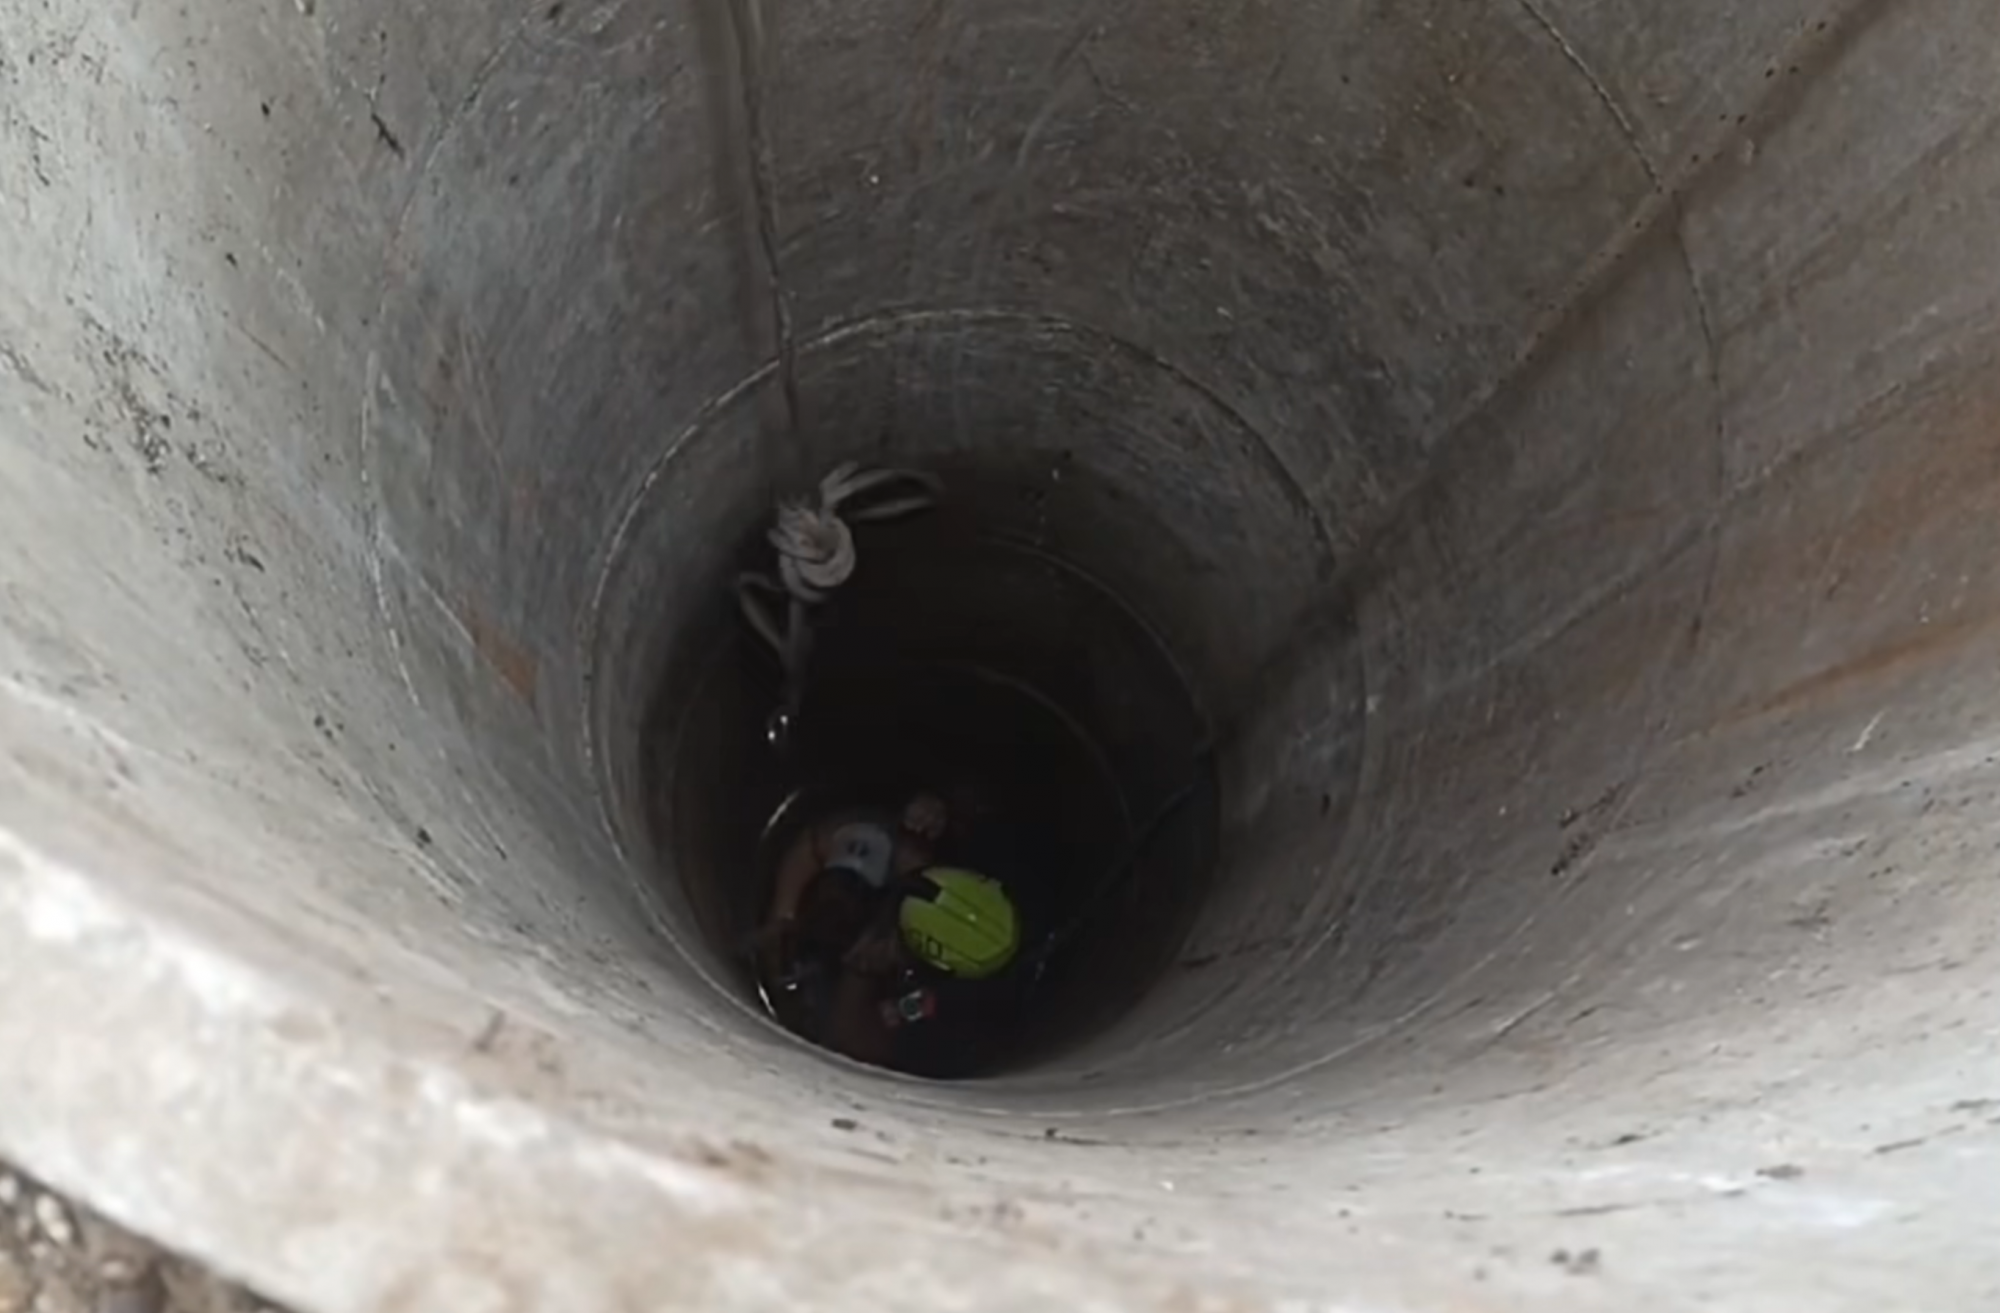 Hat méter mély kútból mentettek ki egy fiatal lányt Erdőkertesen